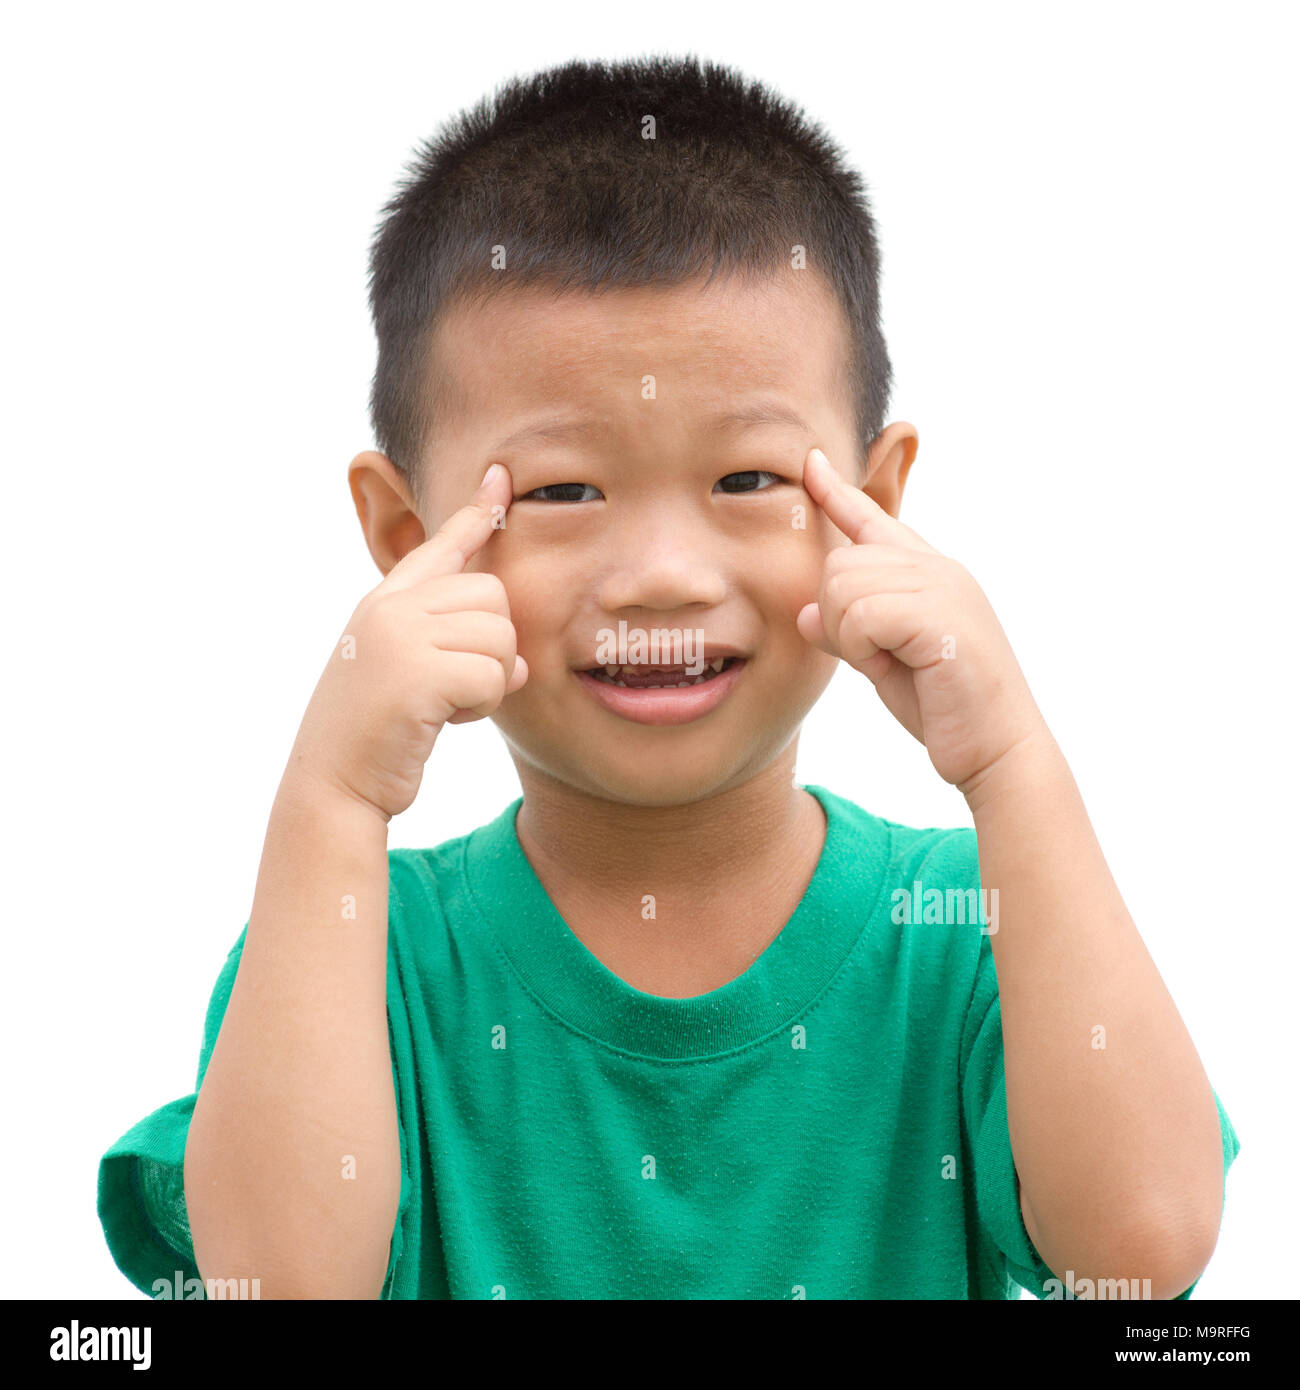 Gerne asiatische Kind zeigt seine Augen und lächelte. Porträt der Jungen zeigen Körperteile auf weißem Hintergrund. Stockfoto